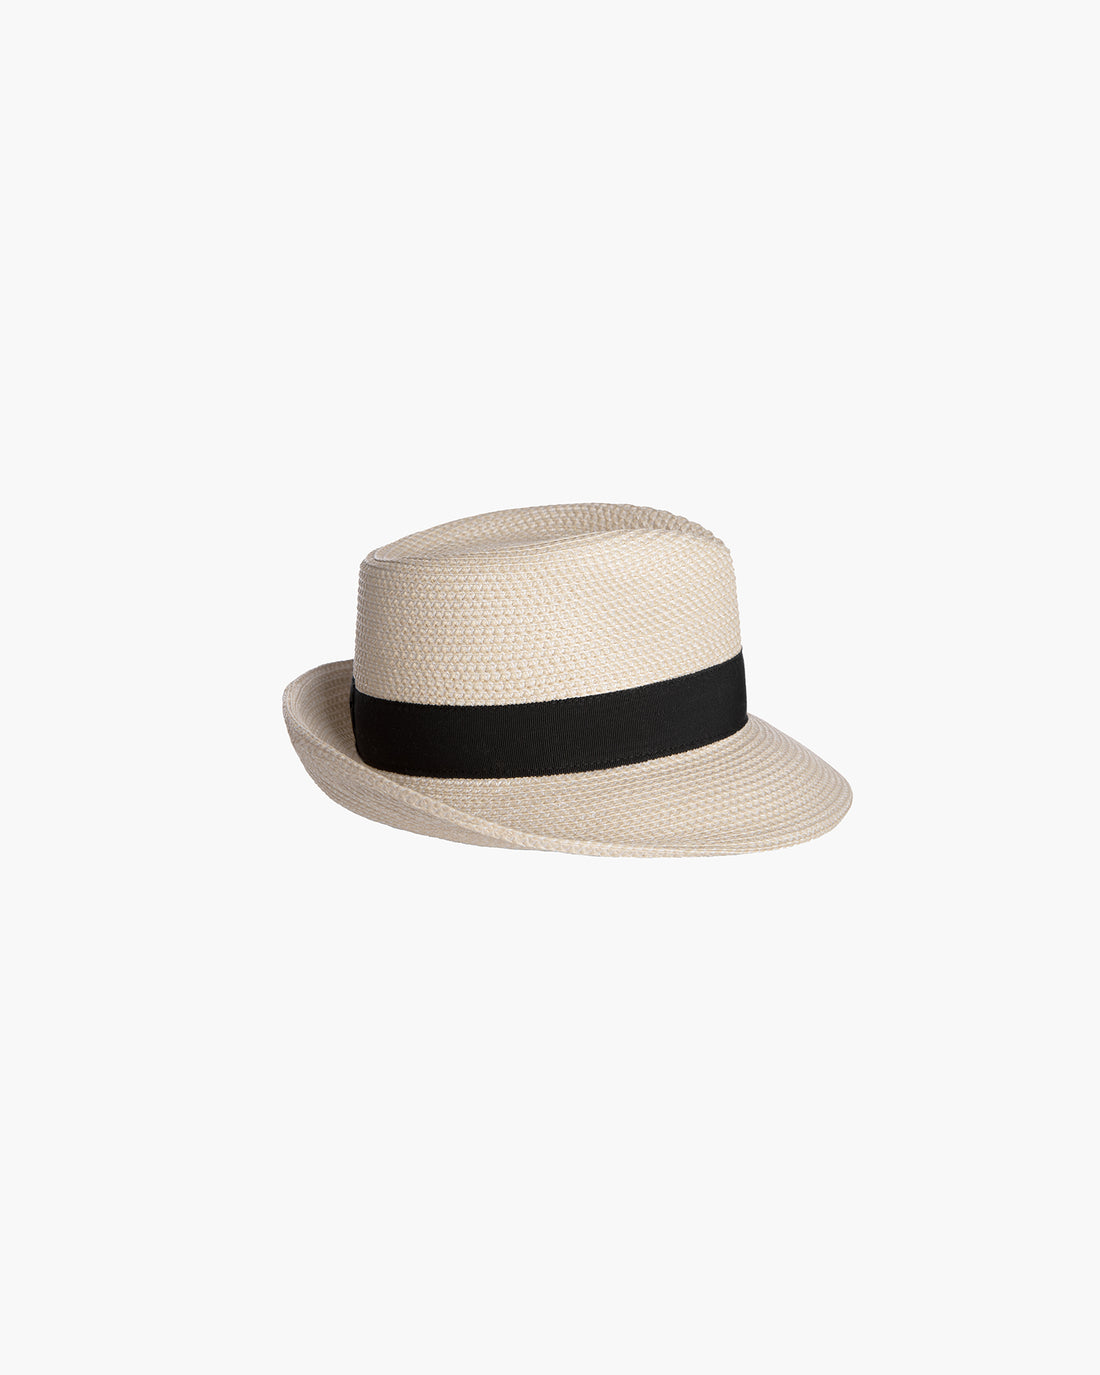 Mr. Squishee® Classic Fedora Hat | Men Designer's Hat | Eric Javits ...